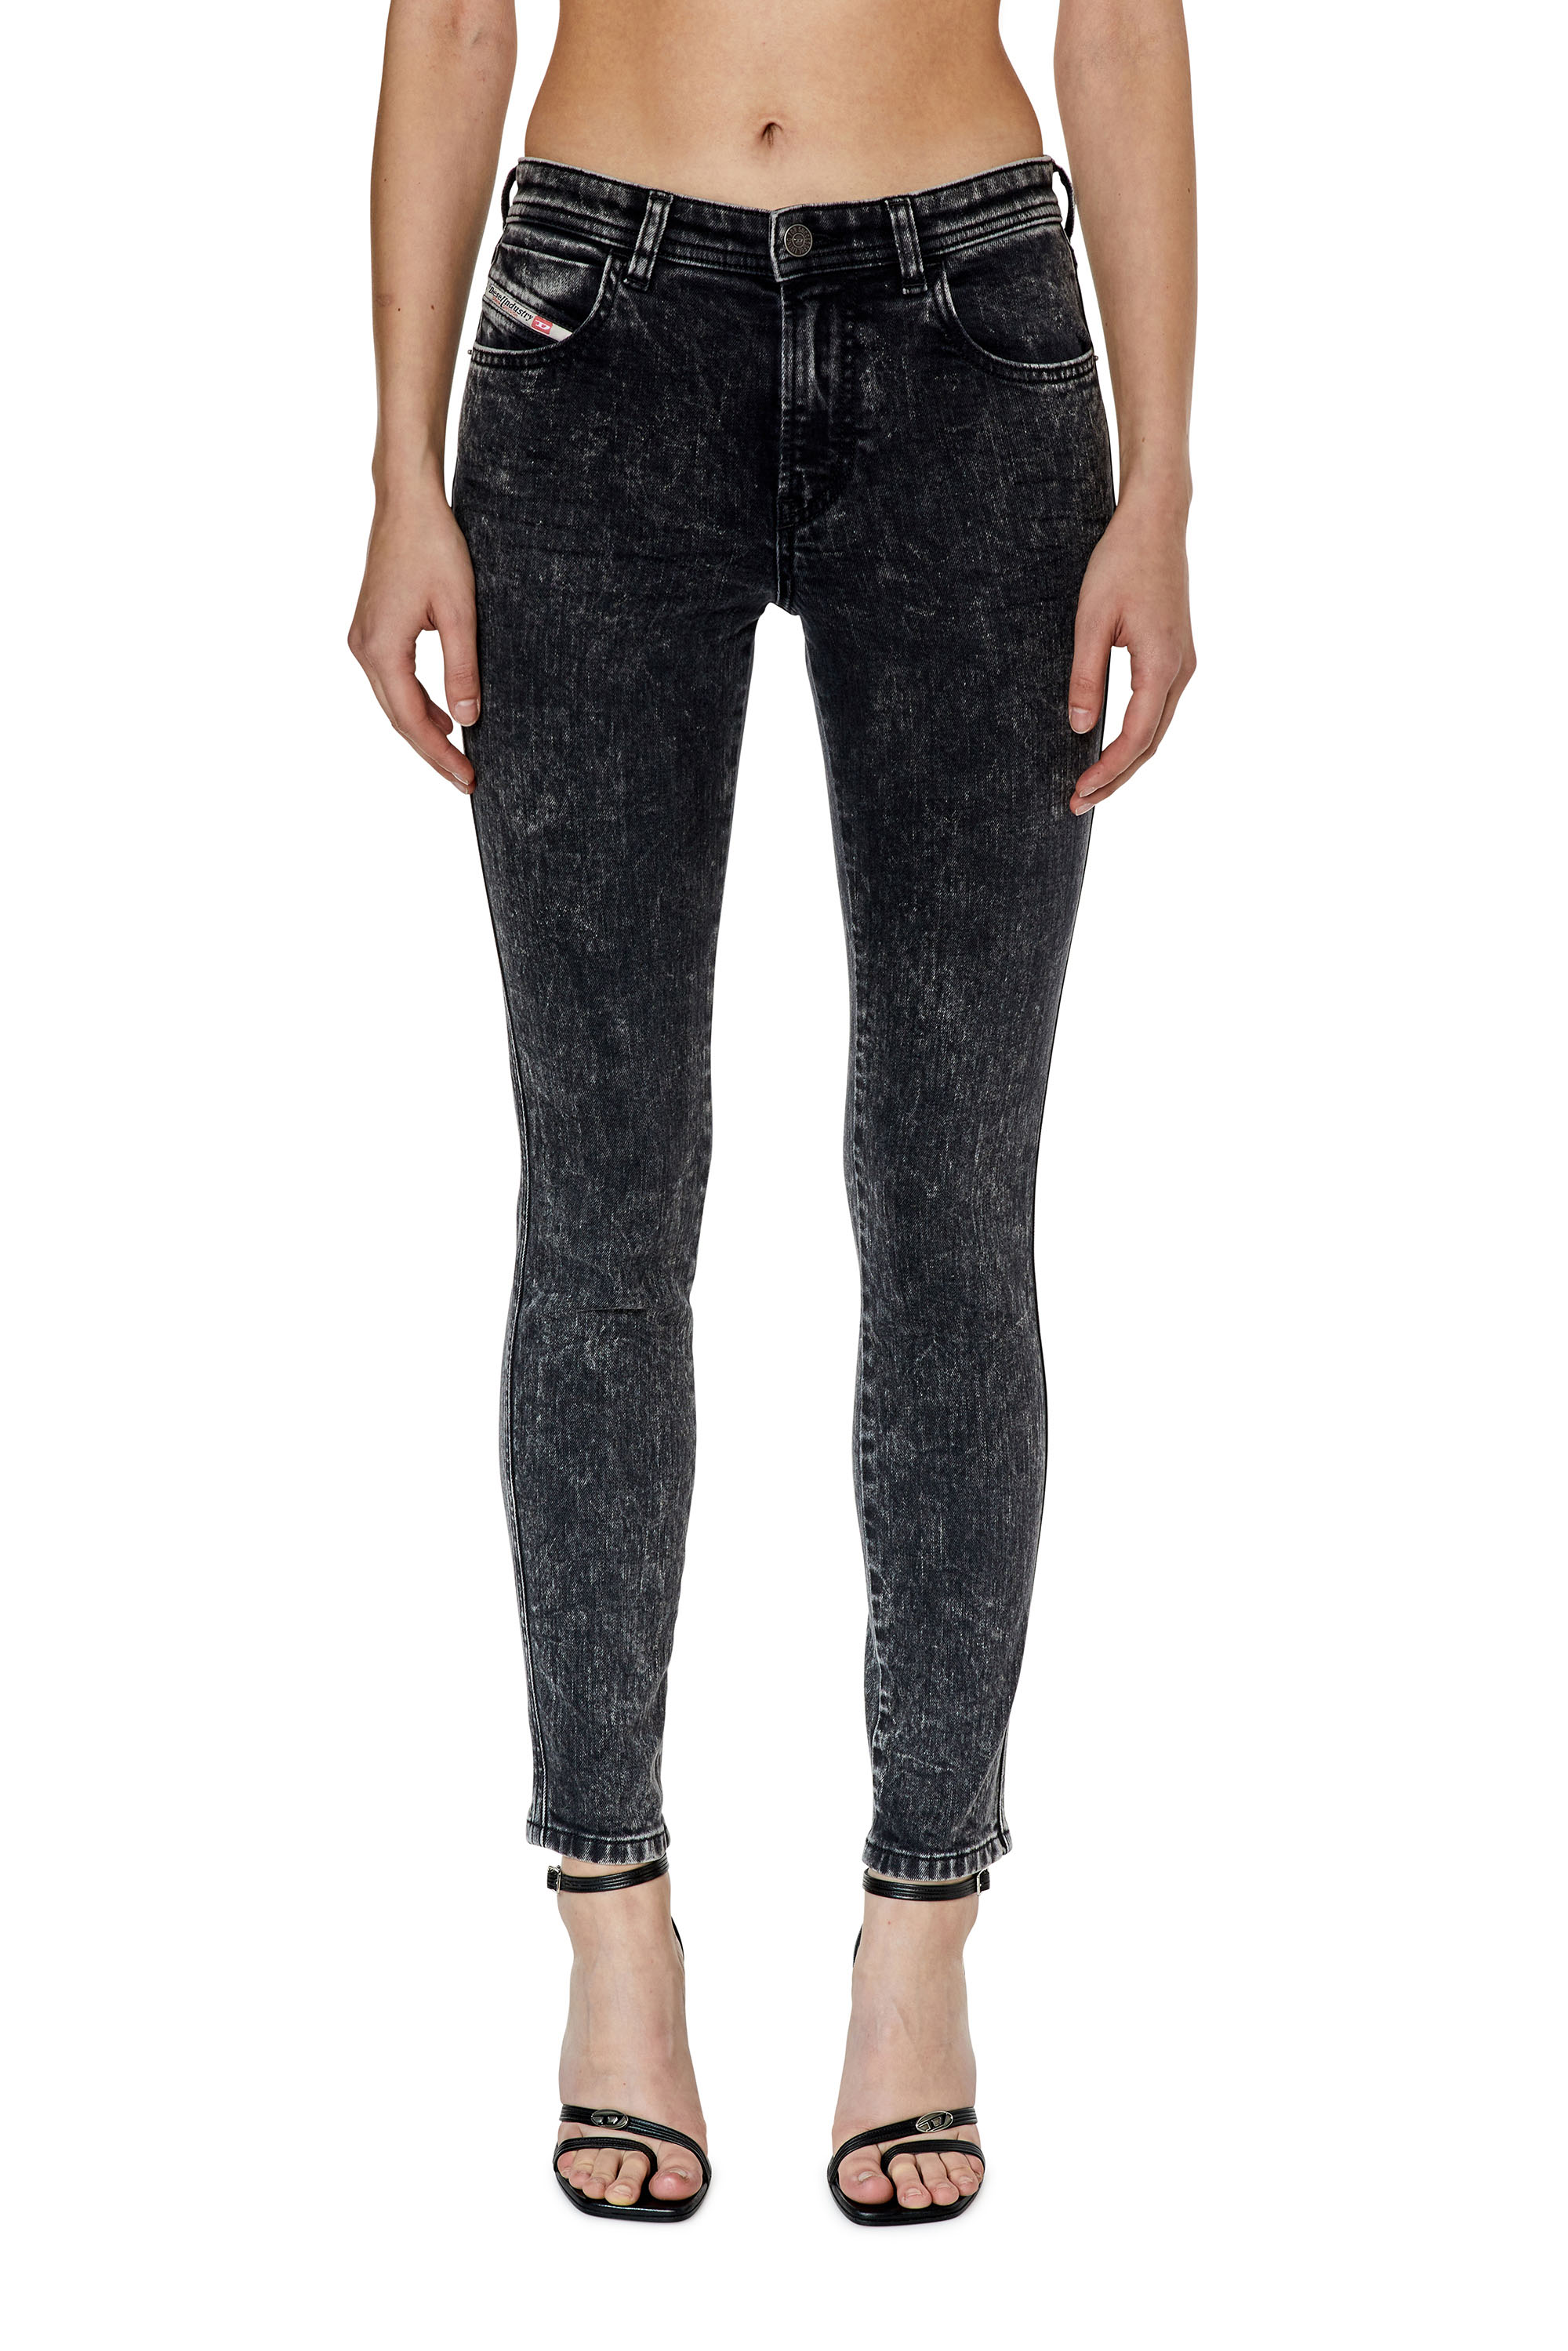 Diesel - Skinny Jeans 2015 Babhila 0ENAN, Black/Dark grey - Image 2